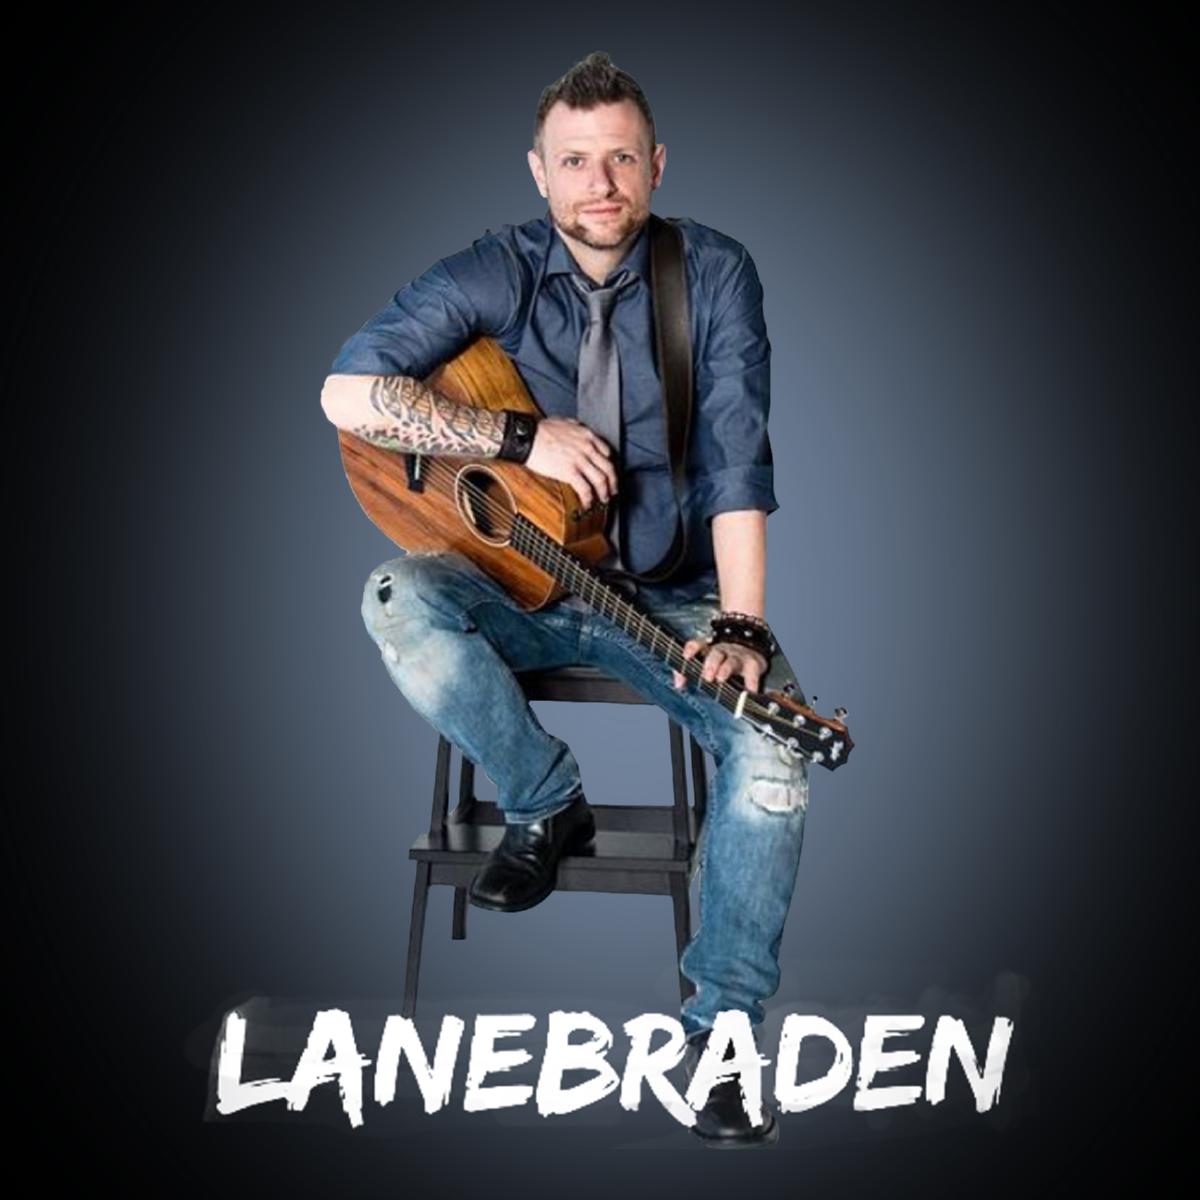 Lane Braden-Soloist